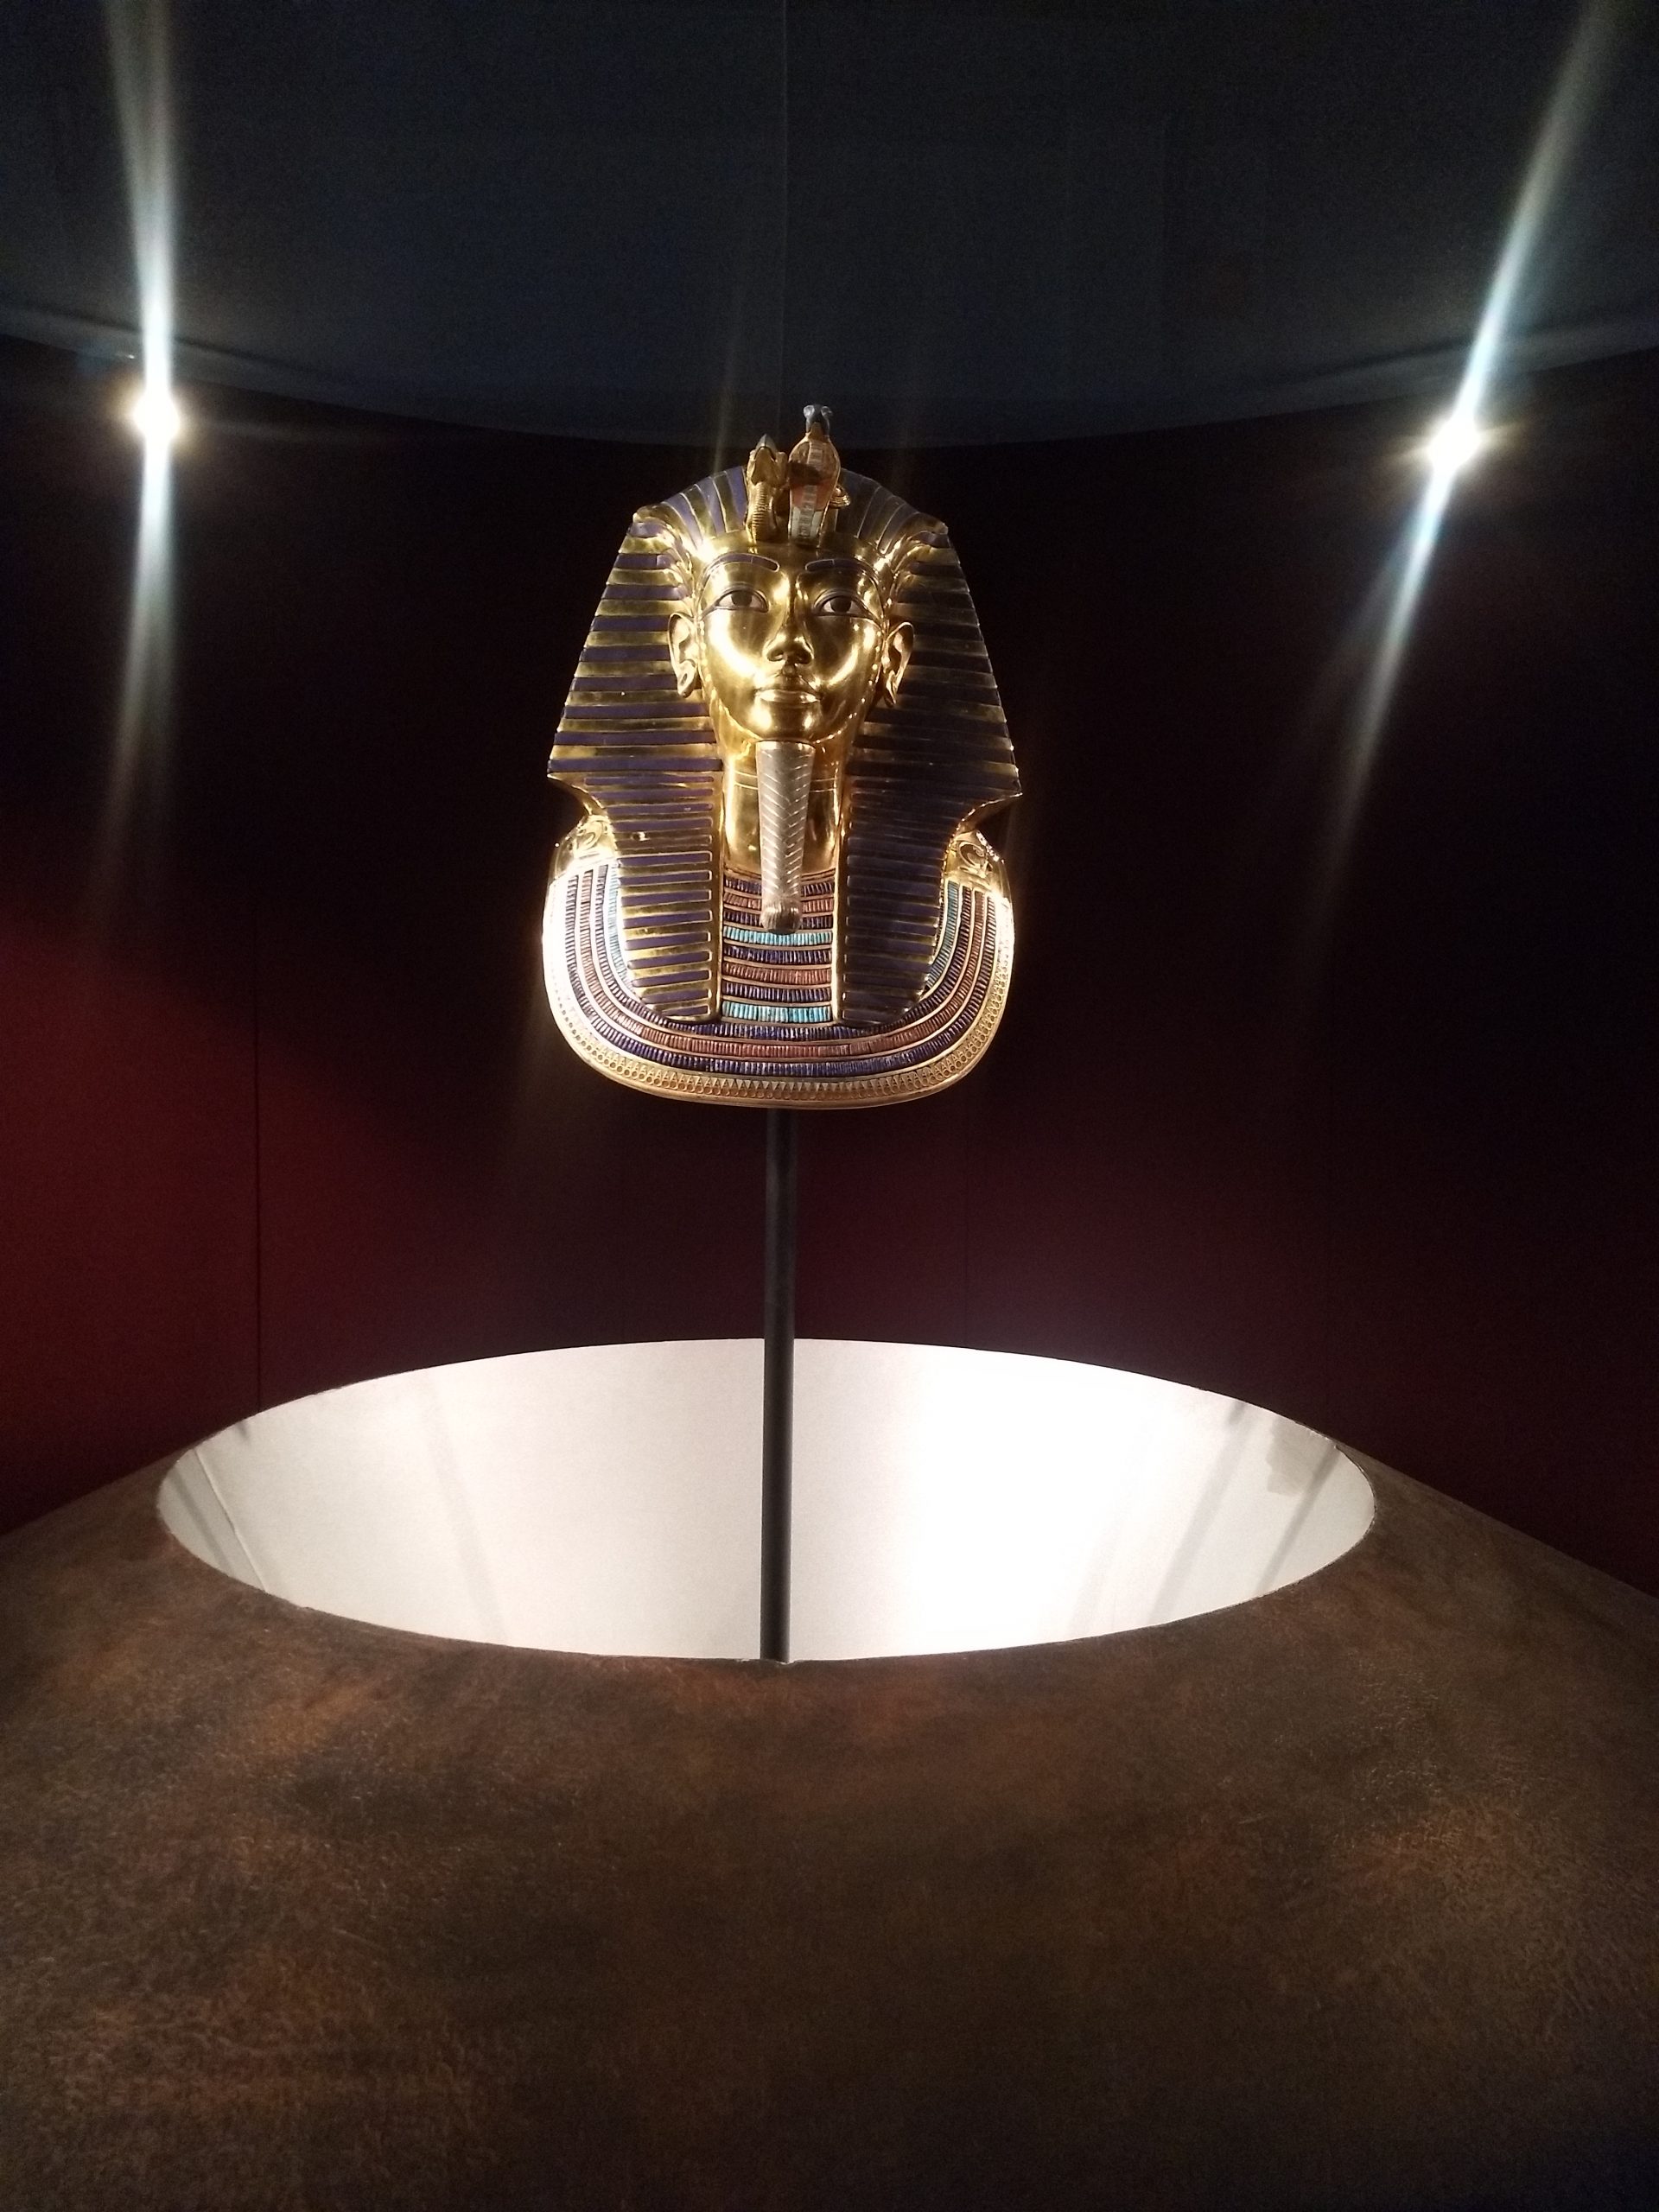 Exposition à Bruxelles de la tombe et trésors du célèbre pharaon